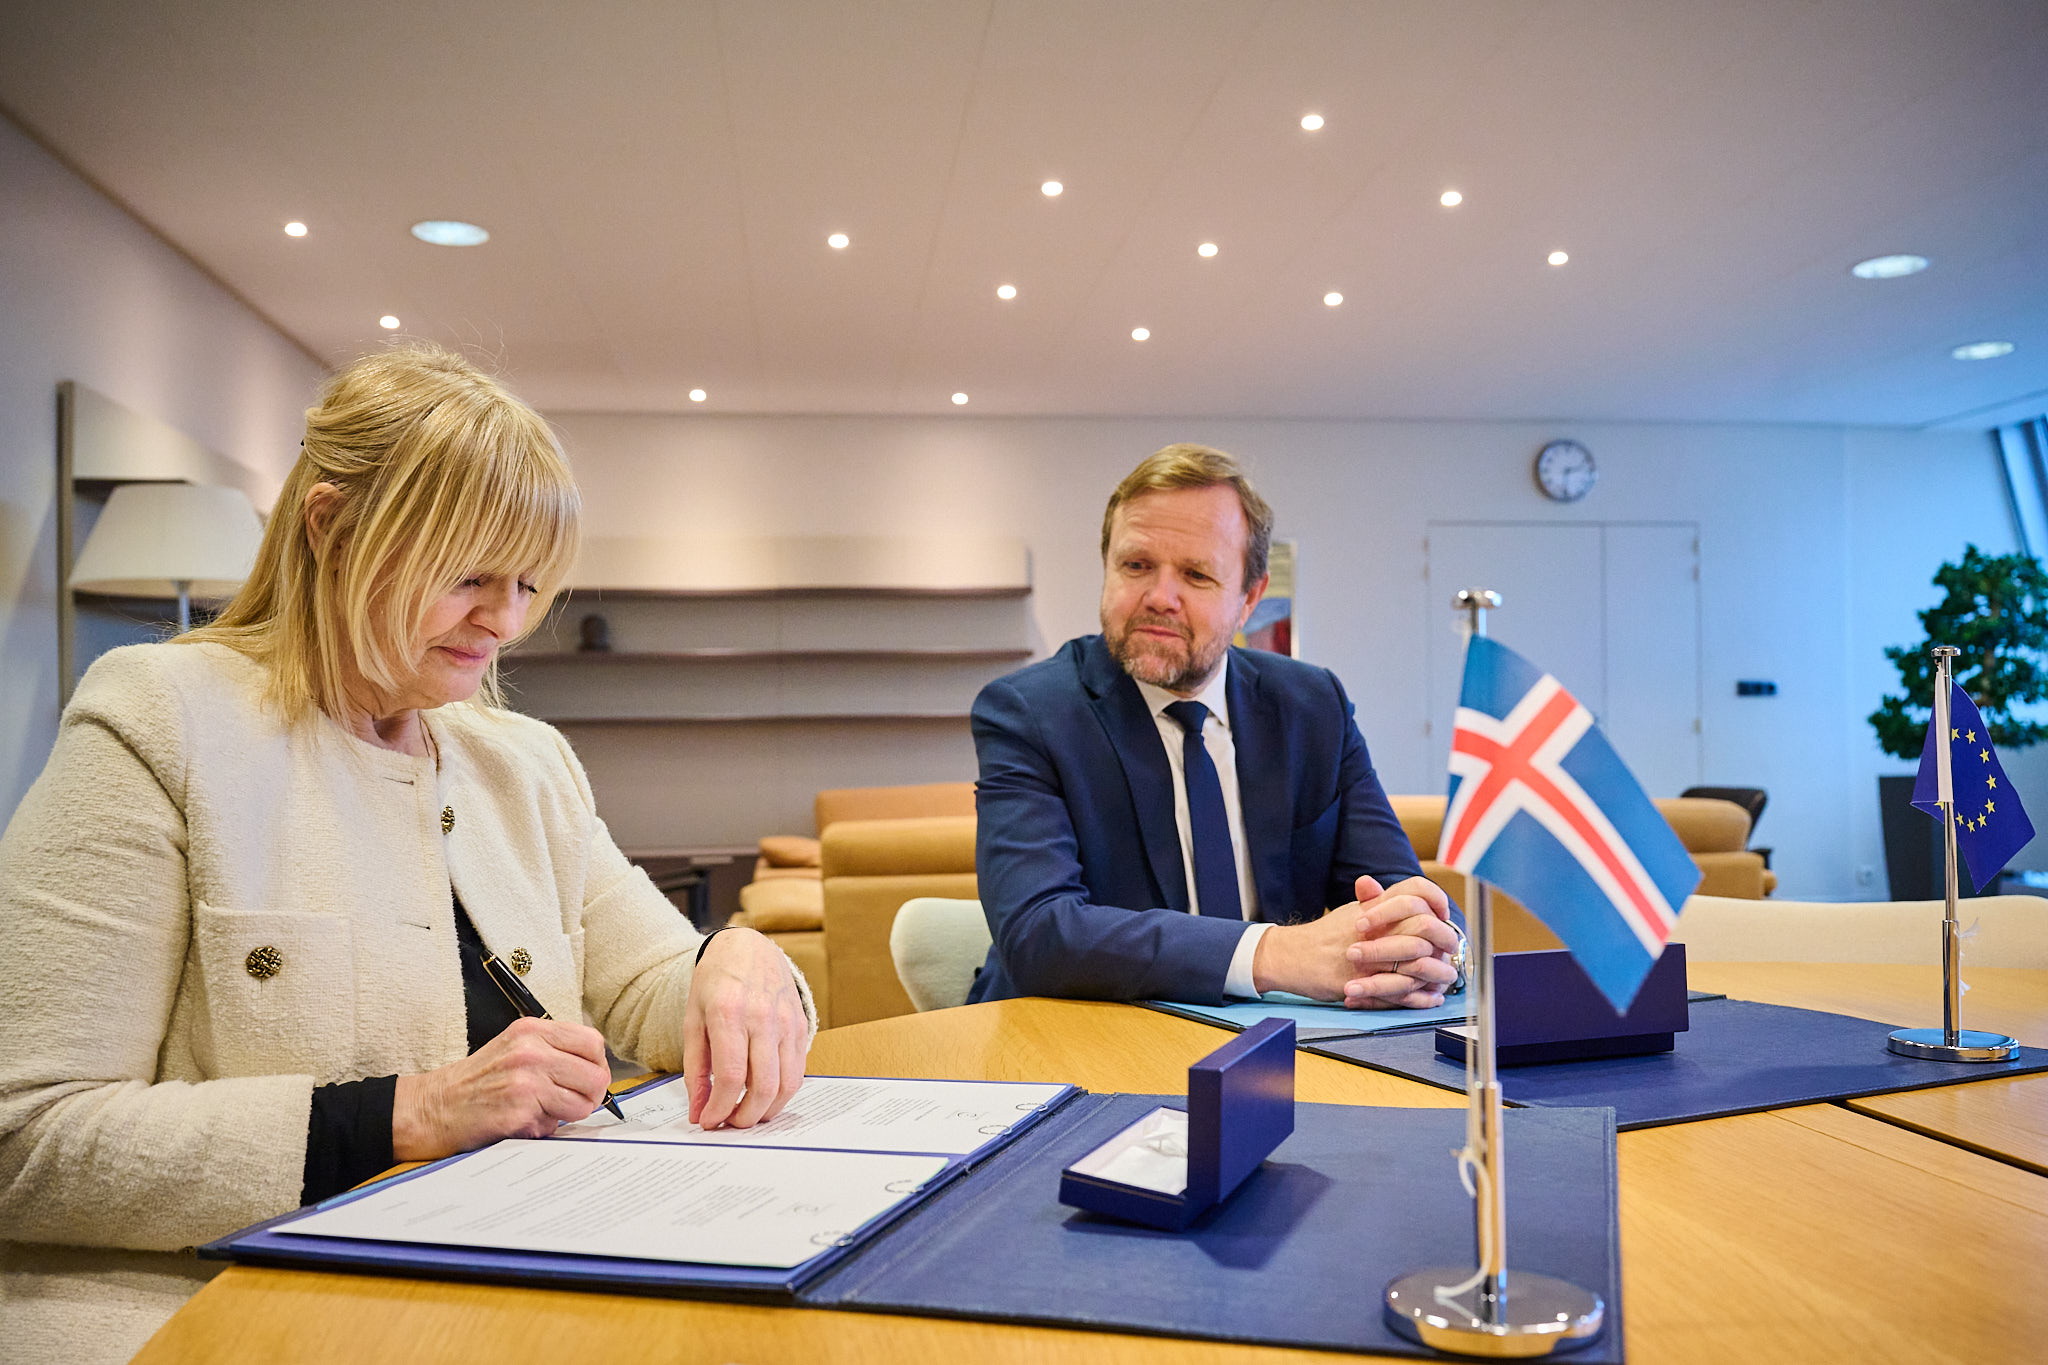 L'Islande adhère au Premier Protocole additionnel à la Convention sur la cybercriminalité, relatif à la lutte contre les actes xénophobes et racistes commis par le biais de systèmes informatiques